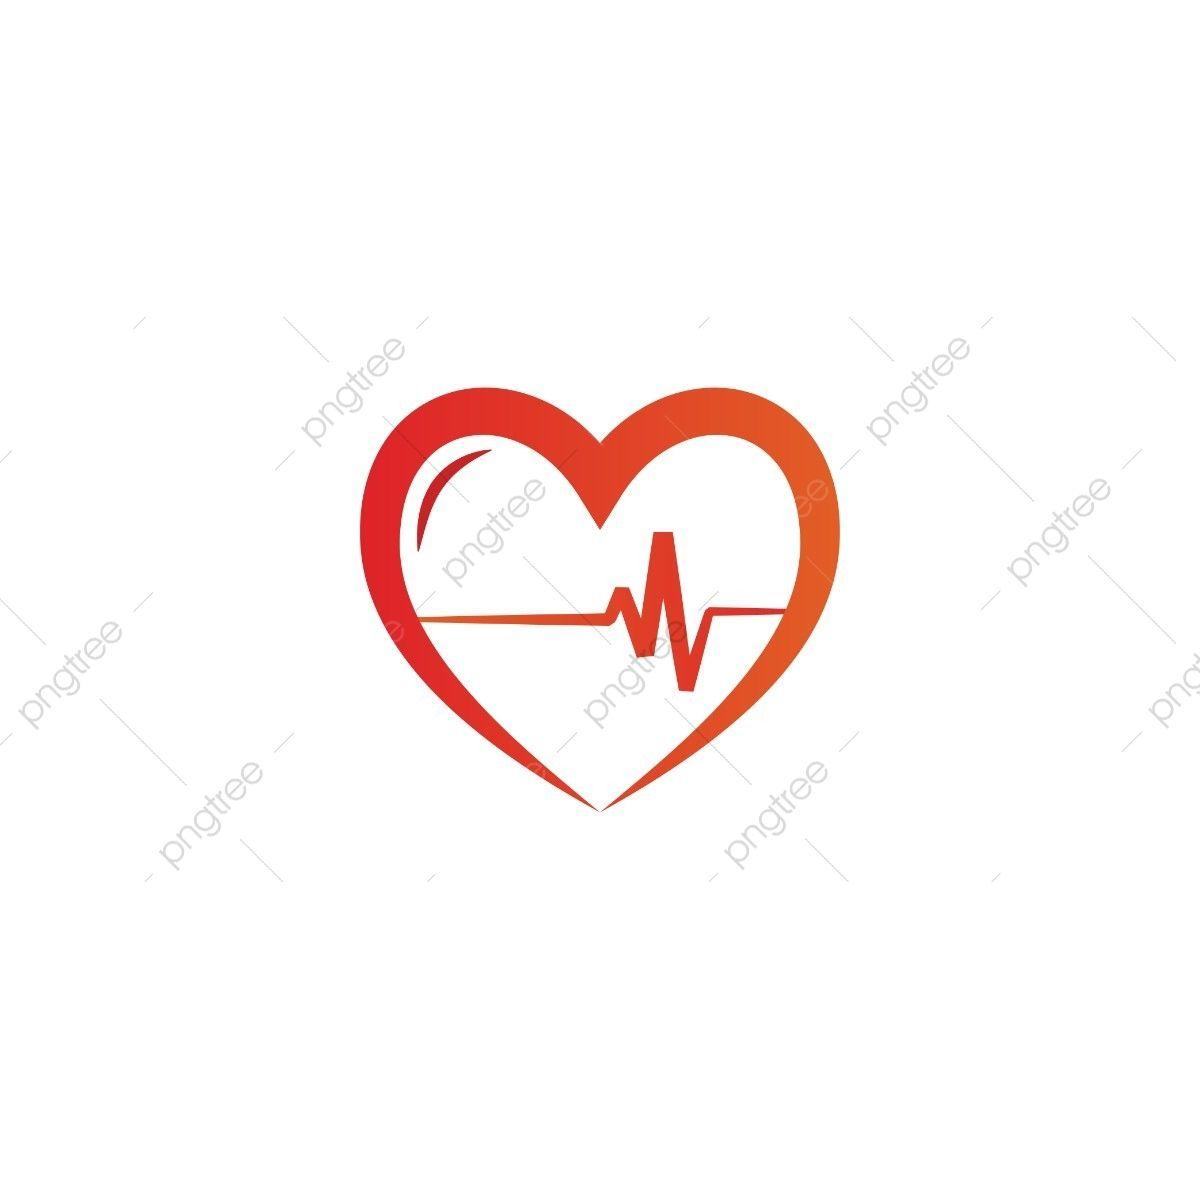 EKG Logo - Elegant Heart And Ekg Outline Logo Design Template Vector, White ...